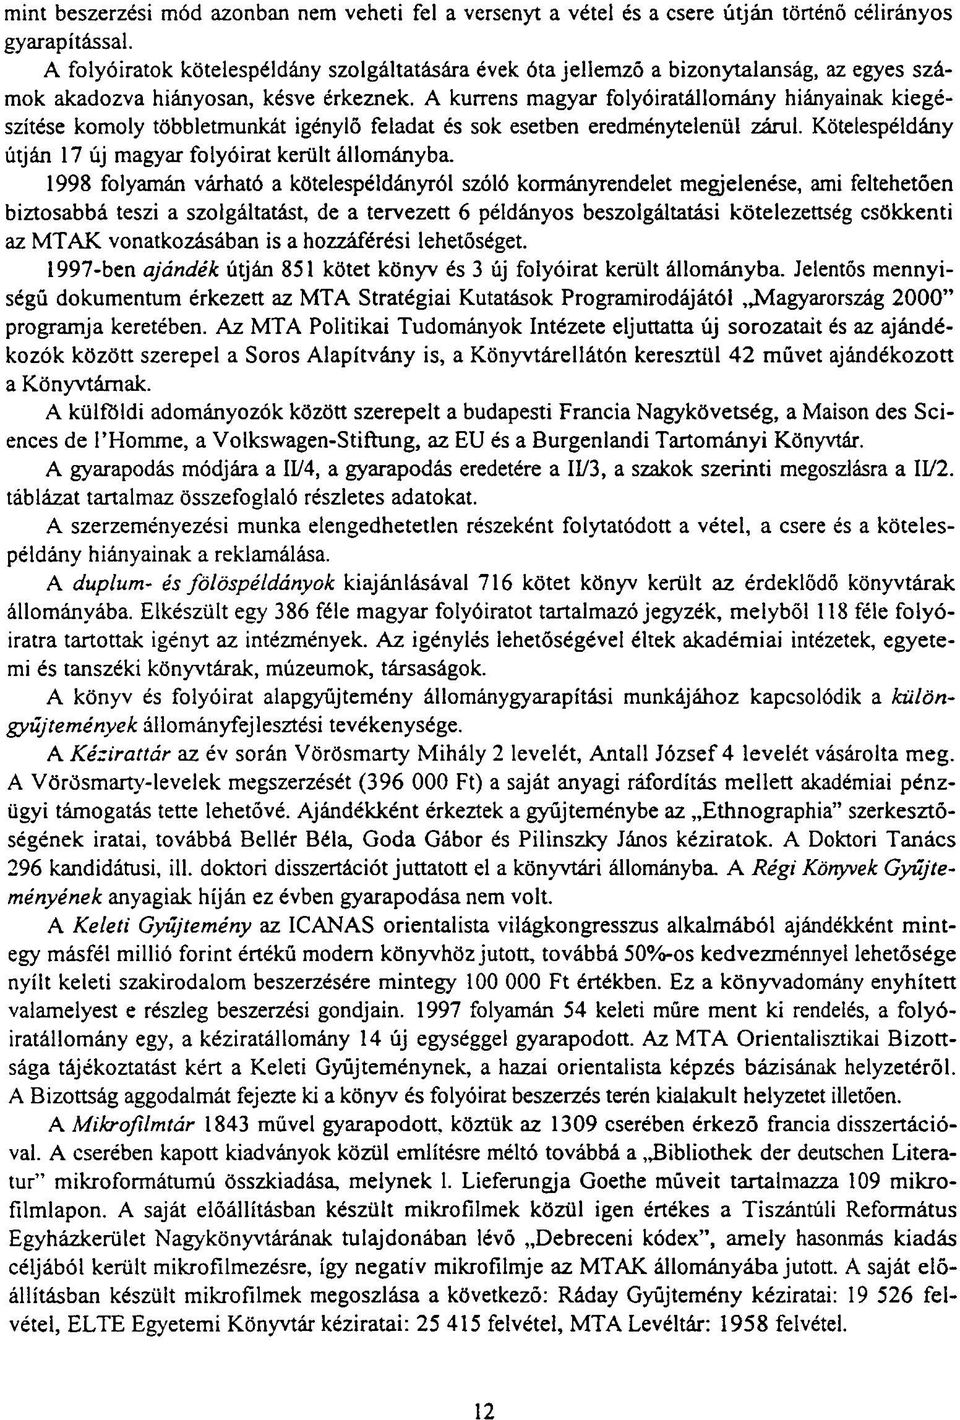 A kurrens magyar folyóiratállomány hiányainak kiegészítése komoly többletmunkát igénylő feladat és sok esetben eredménytelenül zárul. Kötelespéldány útján 17 új magyar folyóirat került állományba.